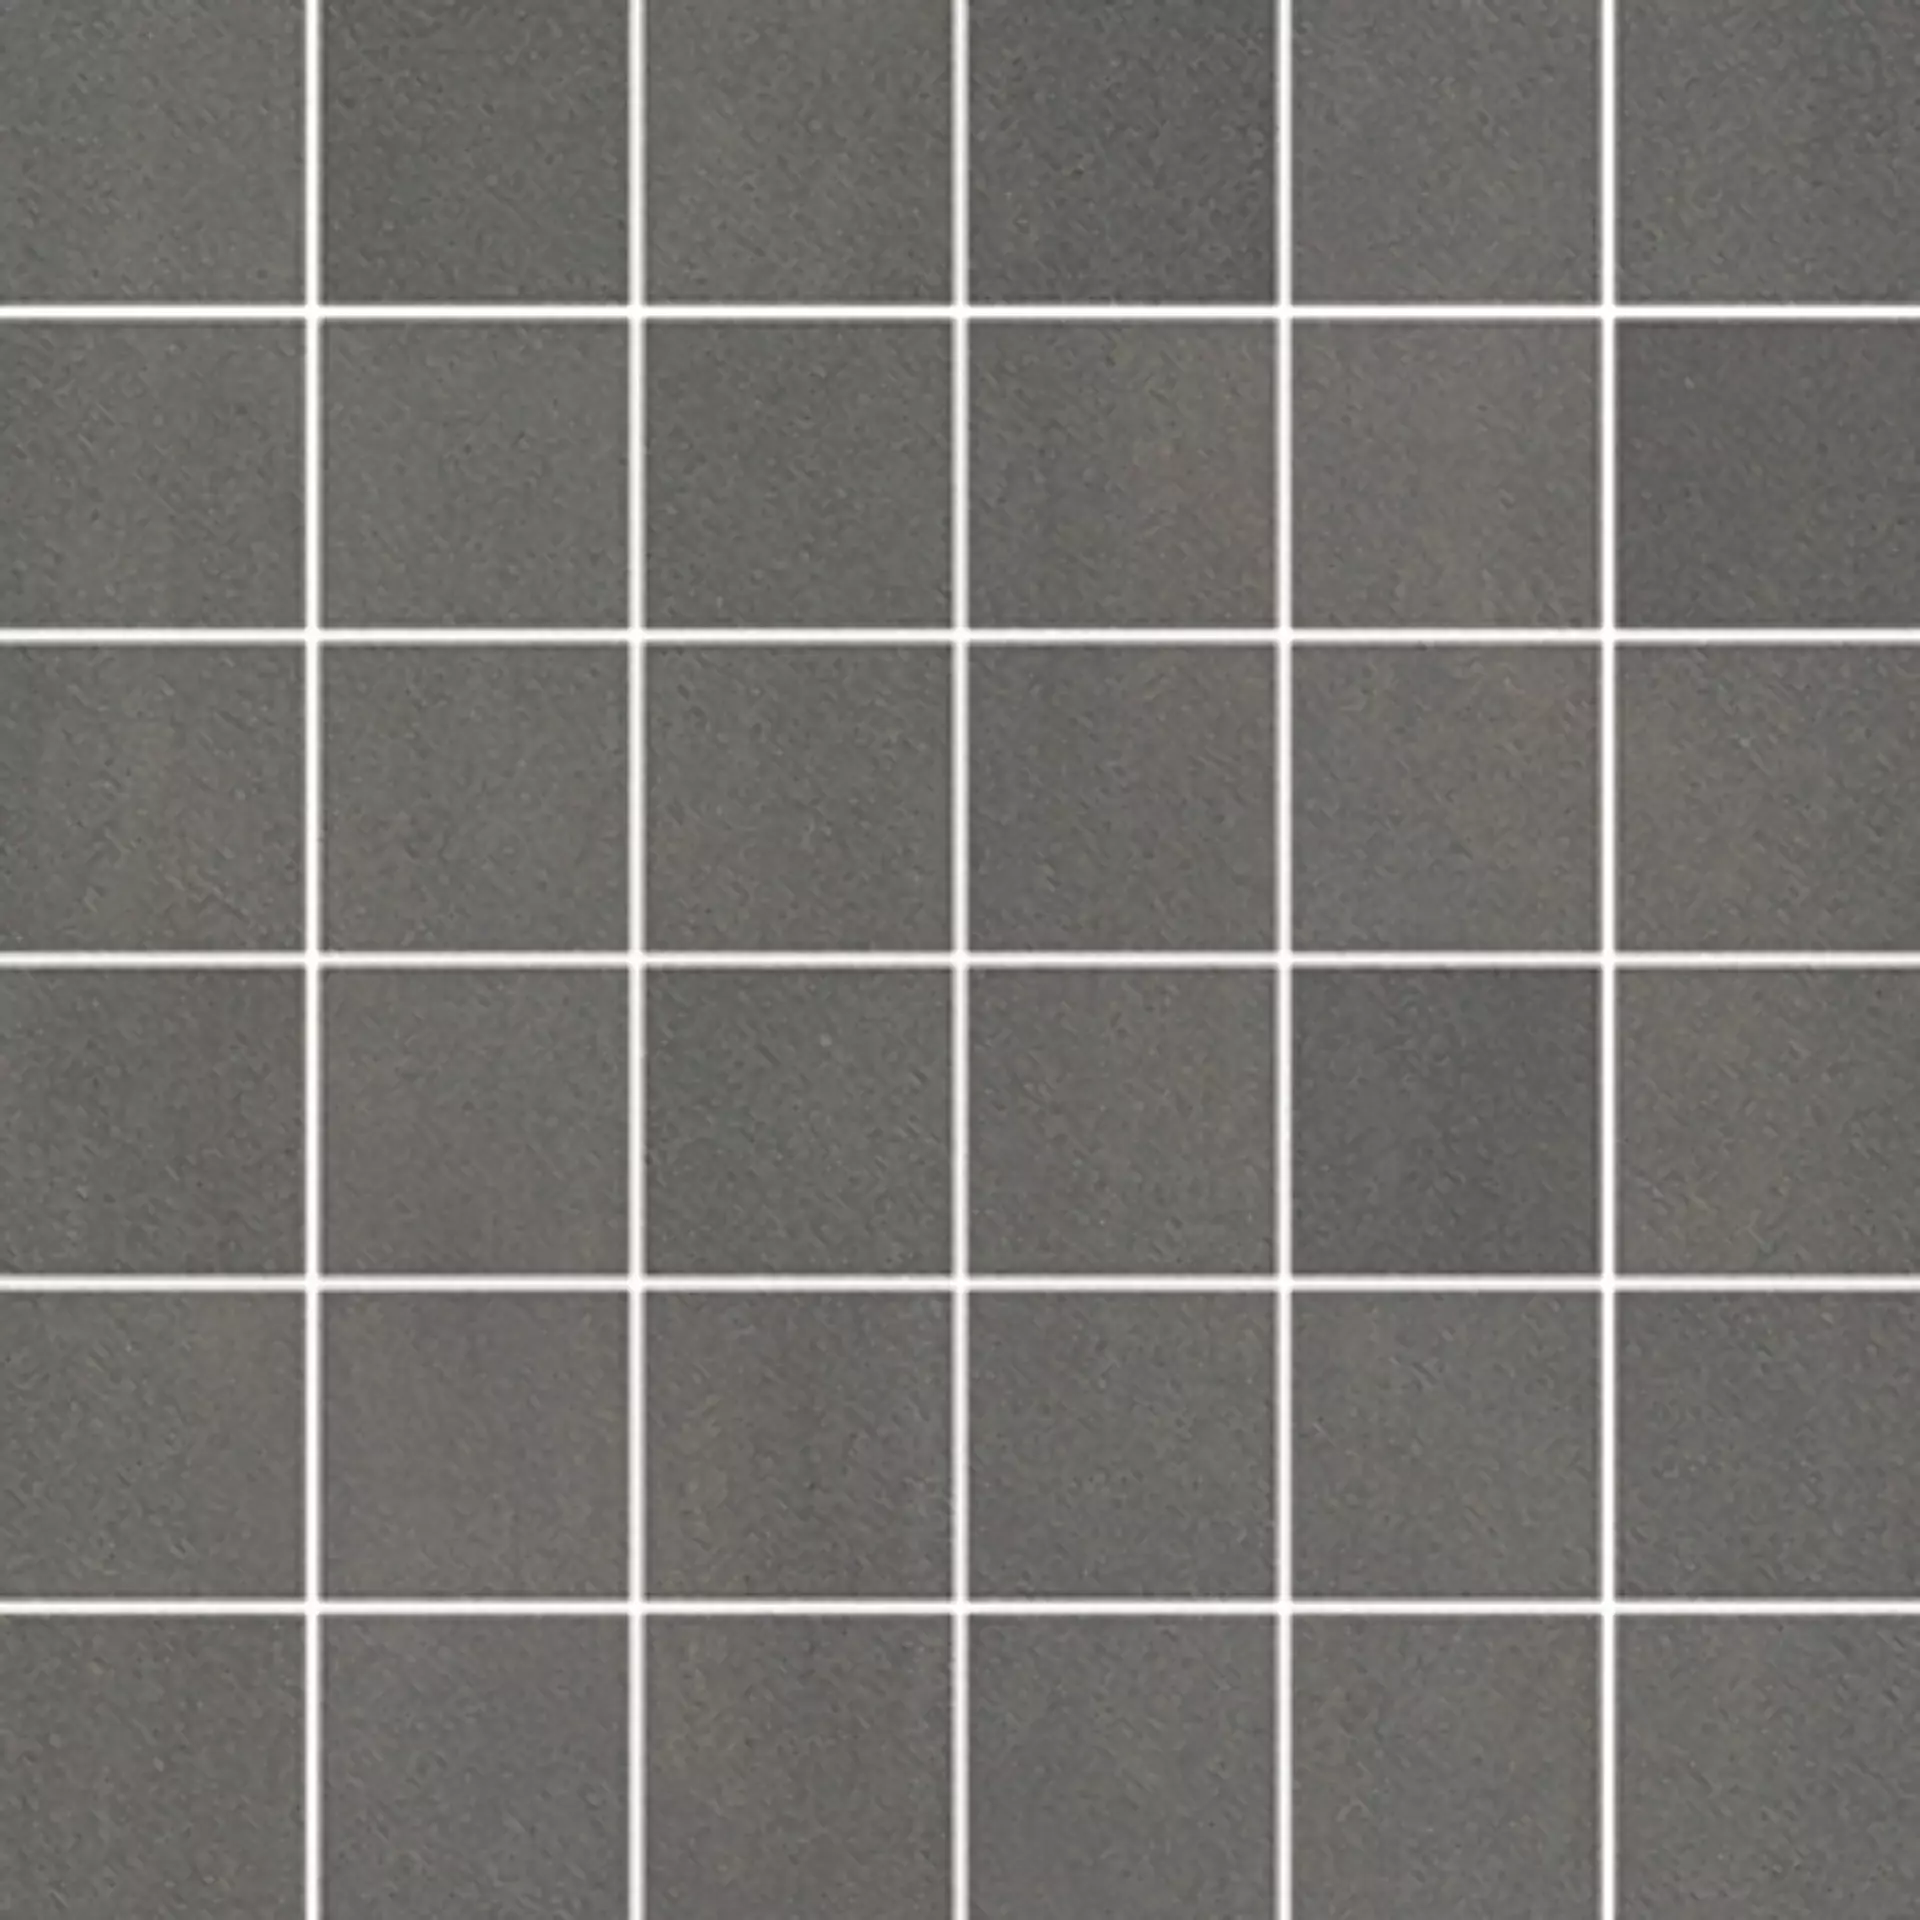 Wandfliese,Bodenfliese Villeroy & Boch Unit Four Dark Grey Matt Dark Grey 2706-CT62 matt 5x5cm Mosaik (5x5) 6mm